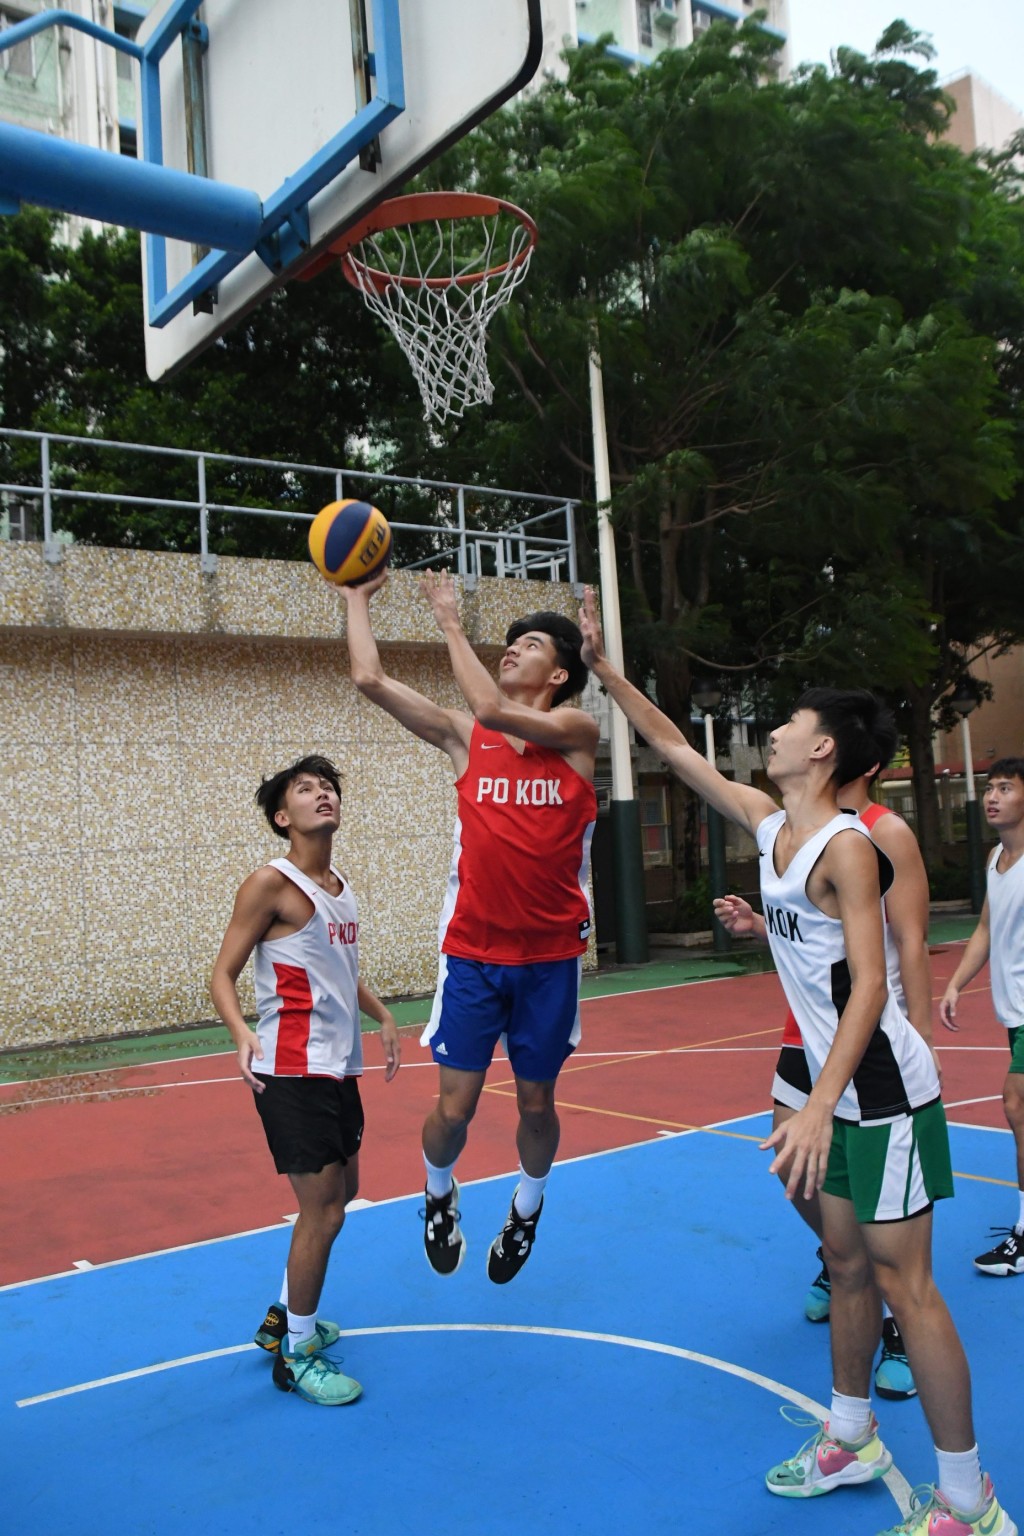 3人籃球重視鏟籃博犯規。 本報記者攝